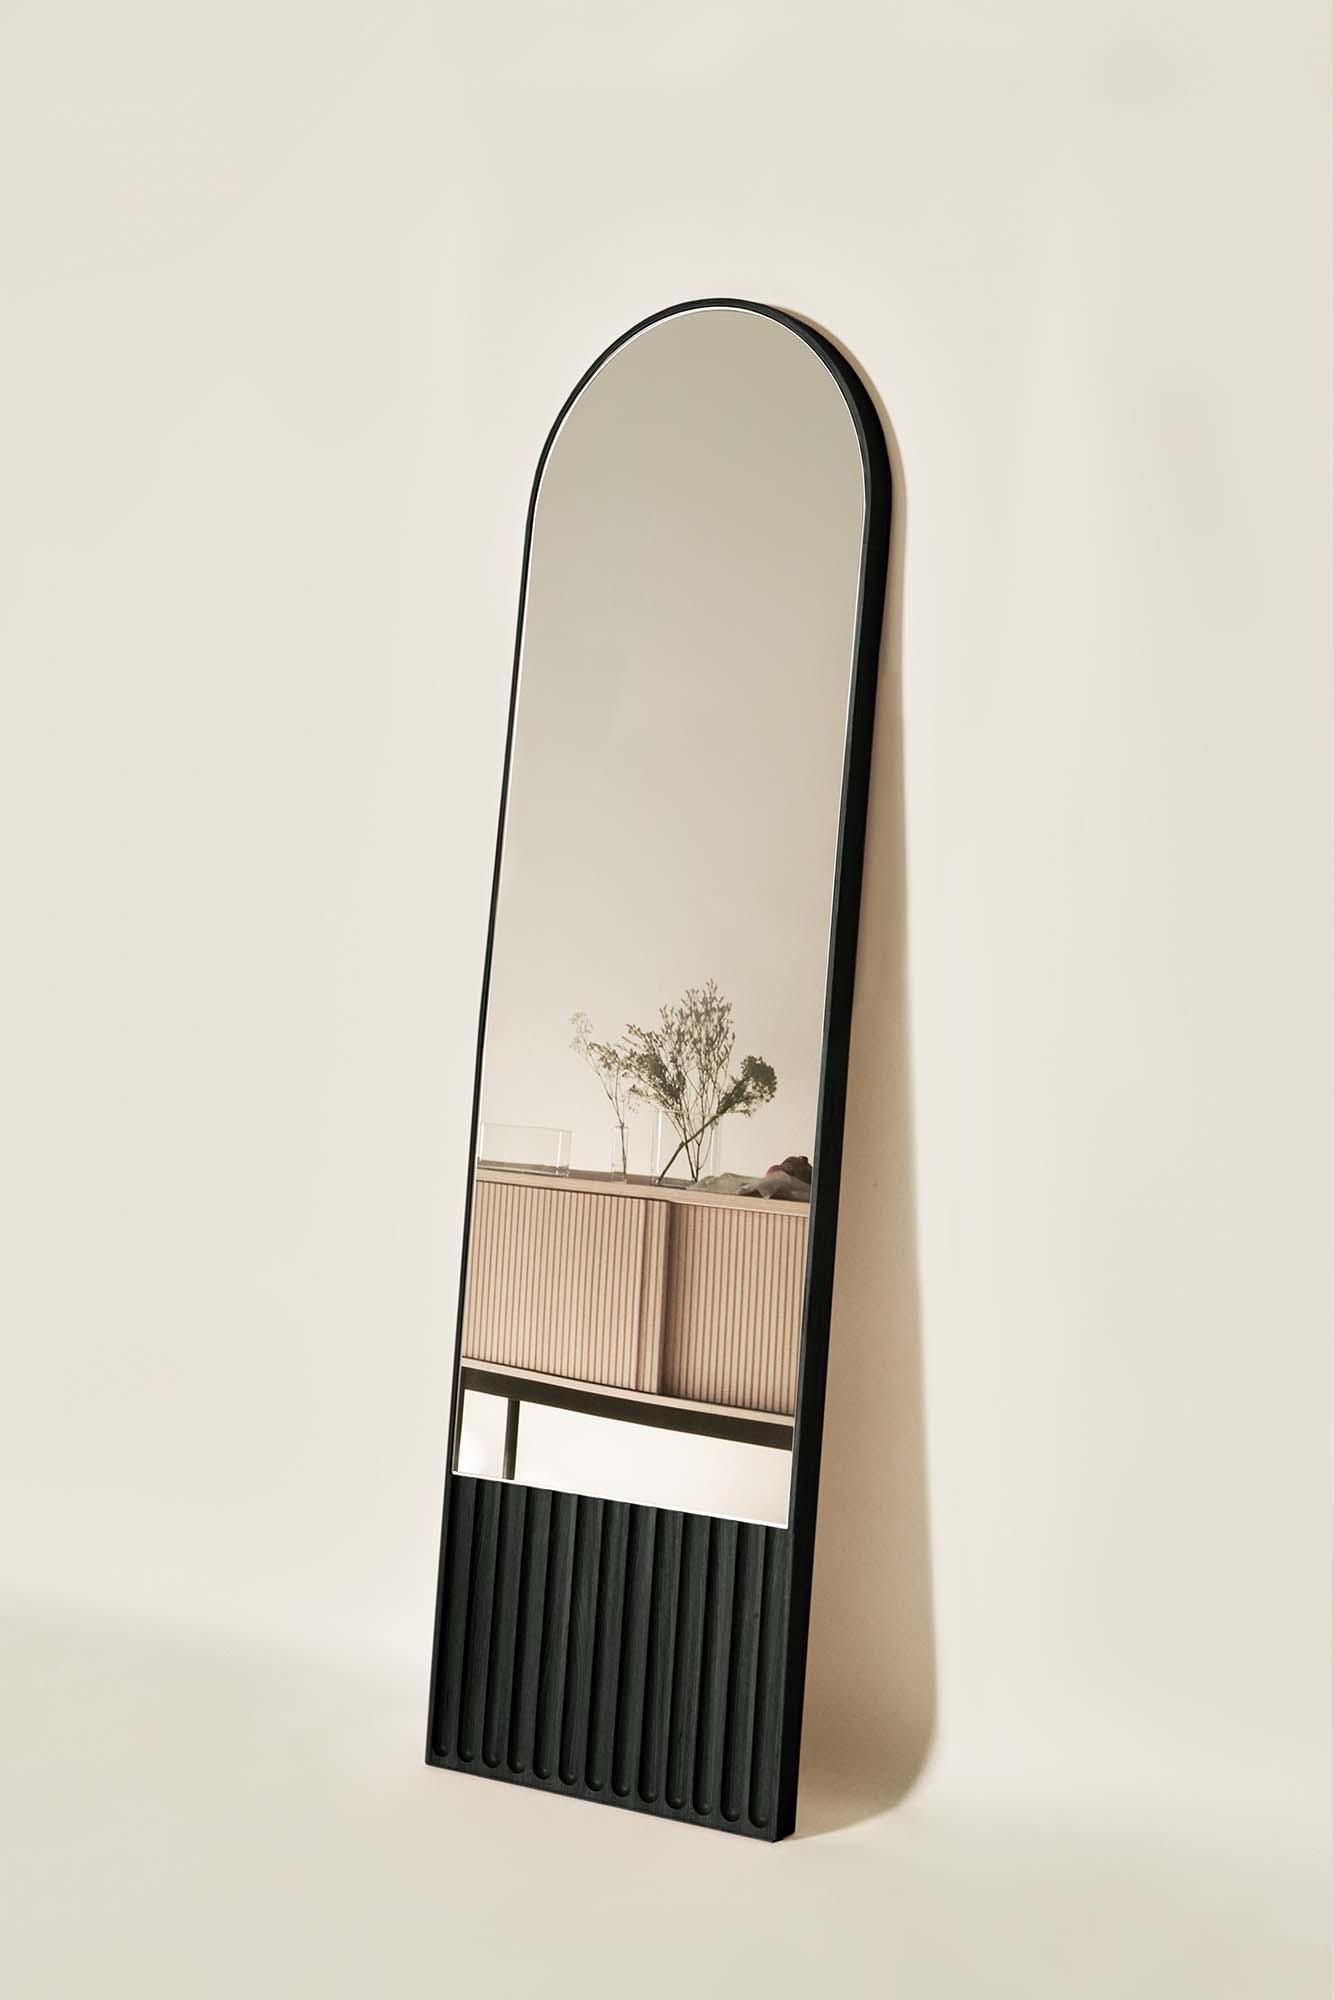 Les miroirs Tutto Sesto font partie de la collection 2023 de meubles contemporains en bois massif. Née du dialogue entre Dale Italia et Cono Studio, la gamme est définie par une esthétique essentielle, en phase avec les tendances actuelles sans